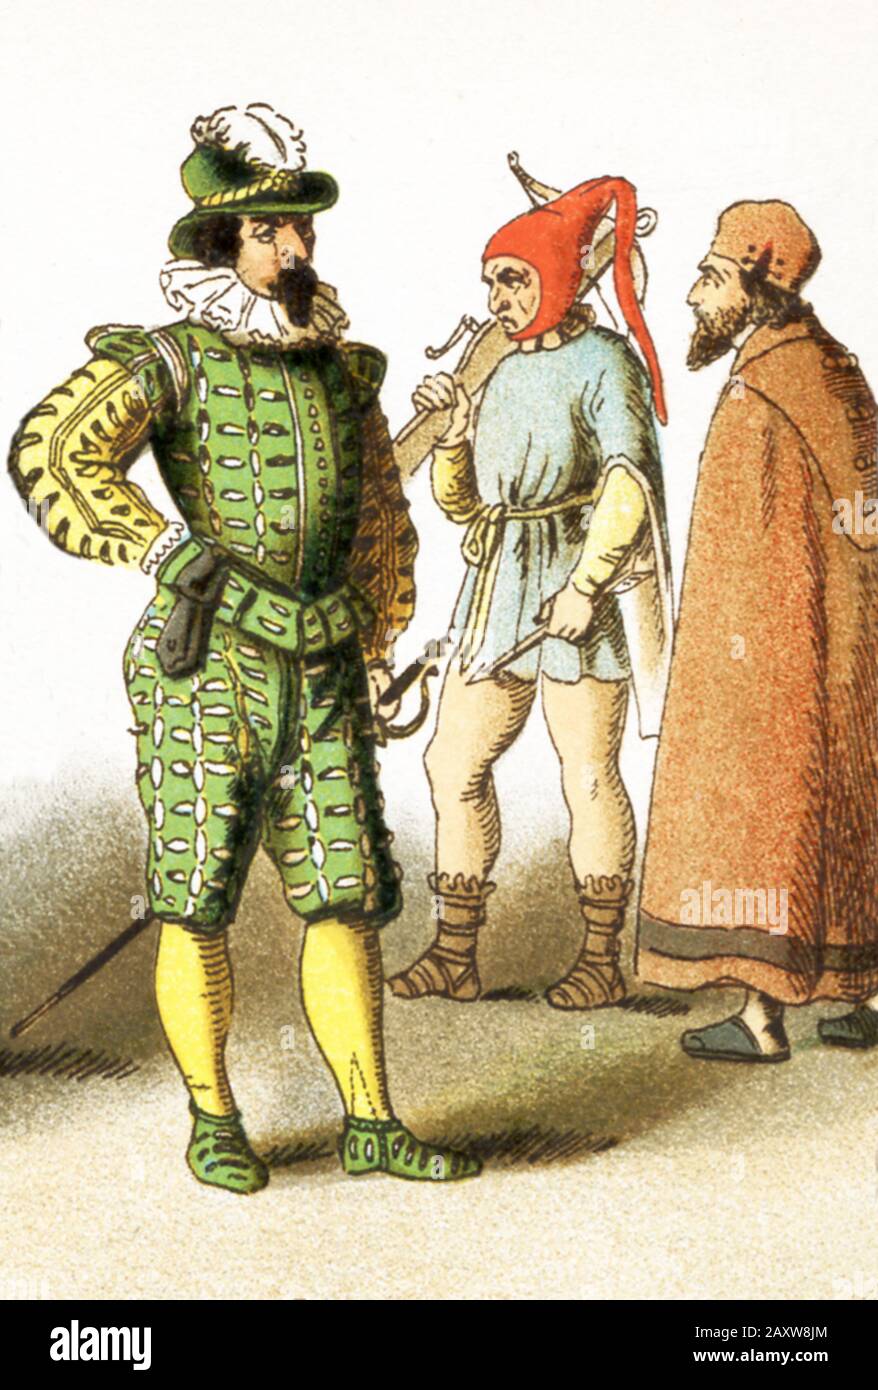 Die Zahlen stellen spanische Männer von A.D. 1500-1600 dar. Sie sind von links nach rechts: Soldat, Biscayan Bauer und Tracht des gemeinen Volkes. Die Abbildung stammt aus dem Jahr 1882. Stockfoto